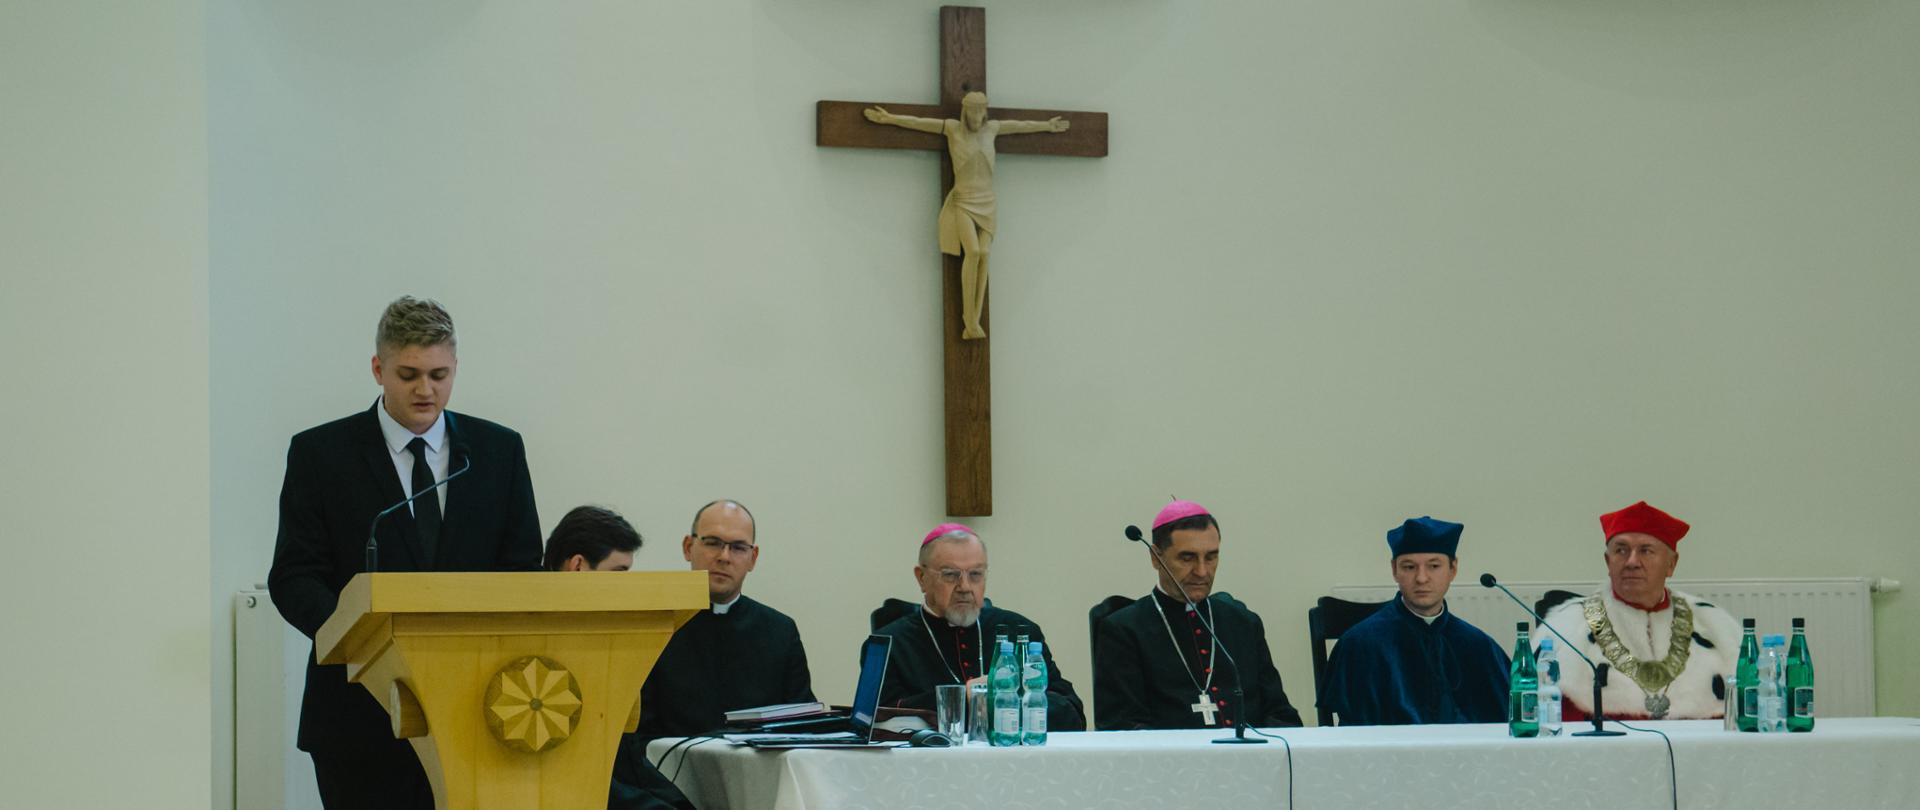 Nowy rok formacji w Wyższym Seminarium Duchownym w Drohiczynie